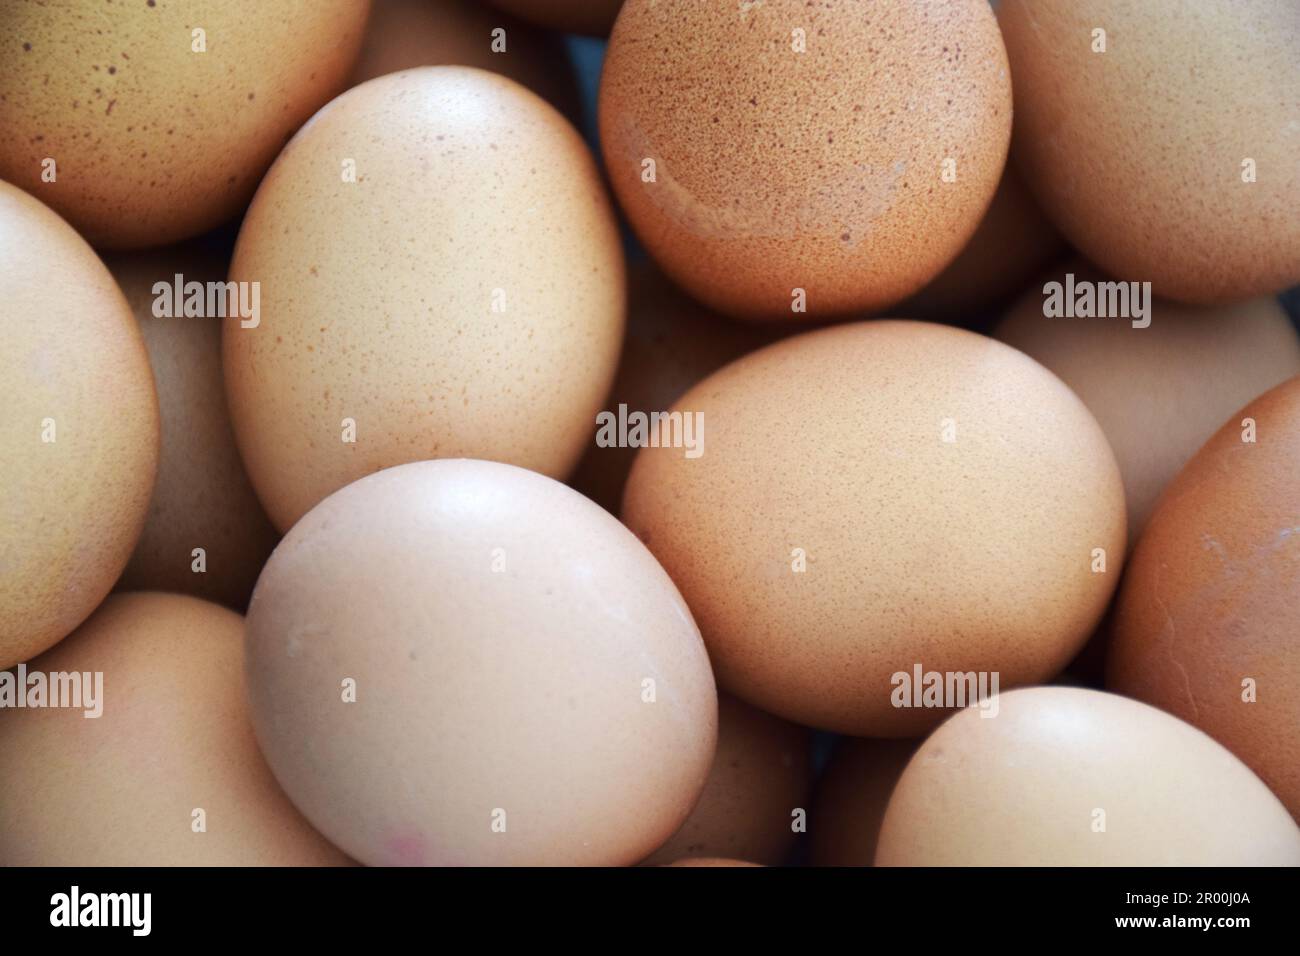 gros plan des œufs biologiques sur le marché, marché durable - pas de plastique - shopping des œufs frais Banque D'Images